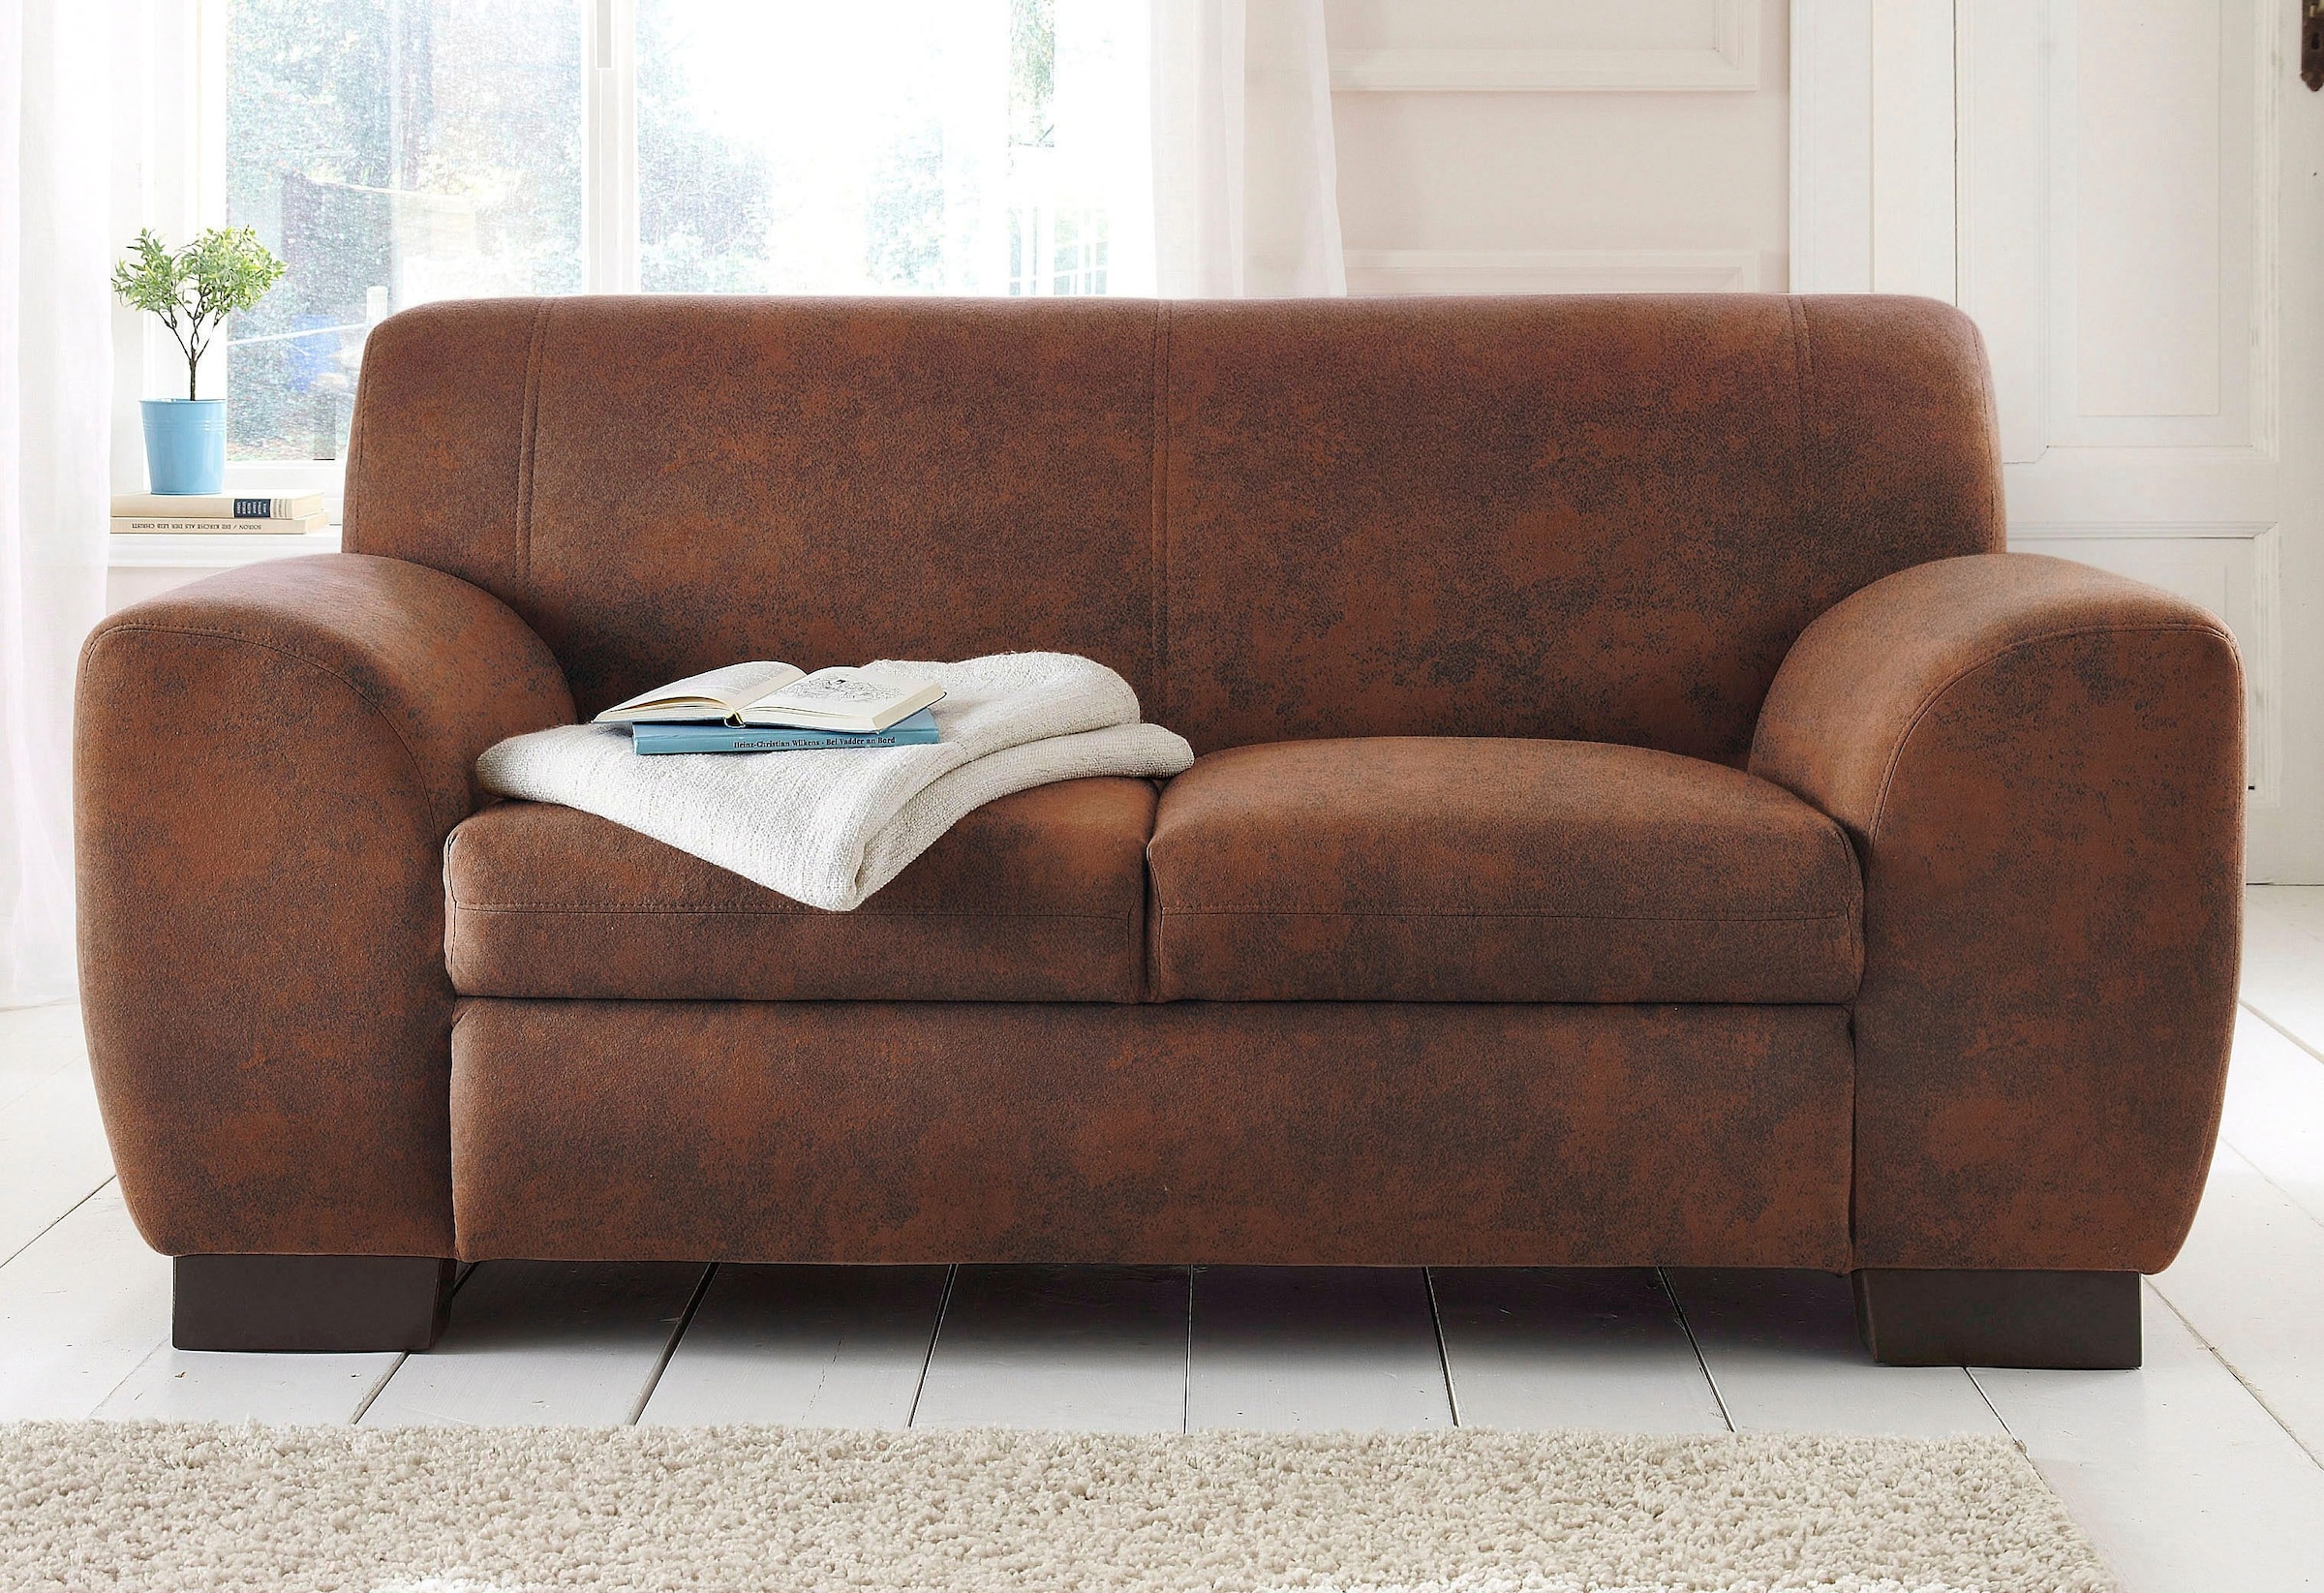 3-Sitzer-Sofa online kaufen bei Quelle